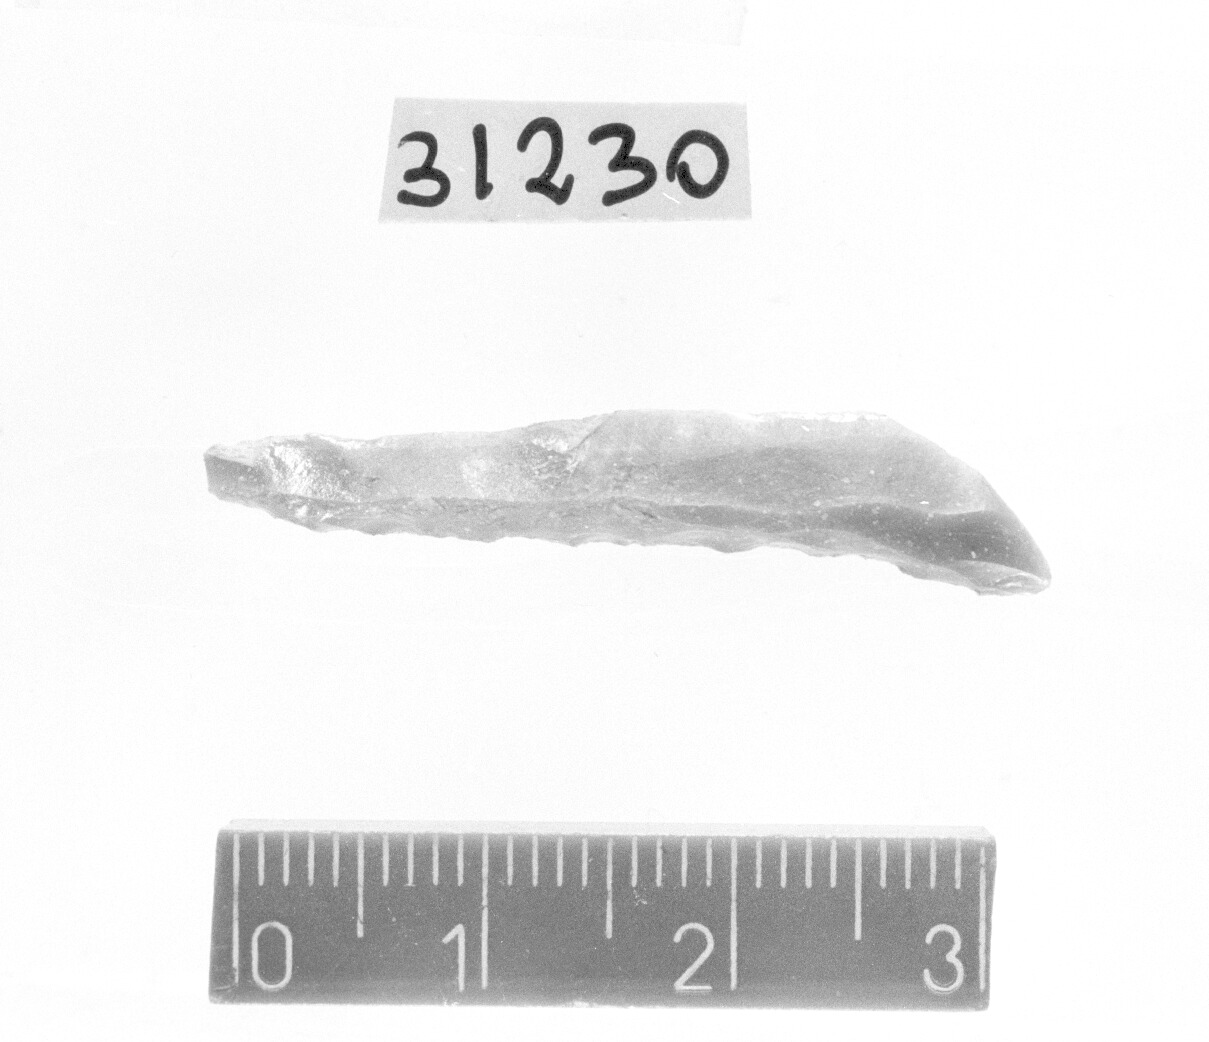 punta a dorso totale - Gravettiano (Paleolitico superiore)